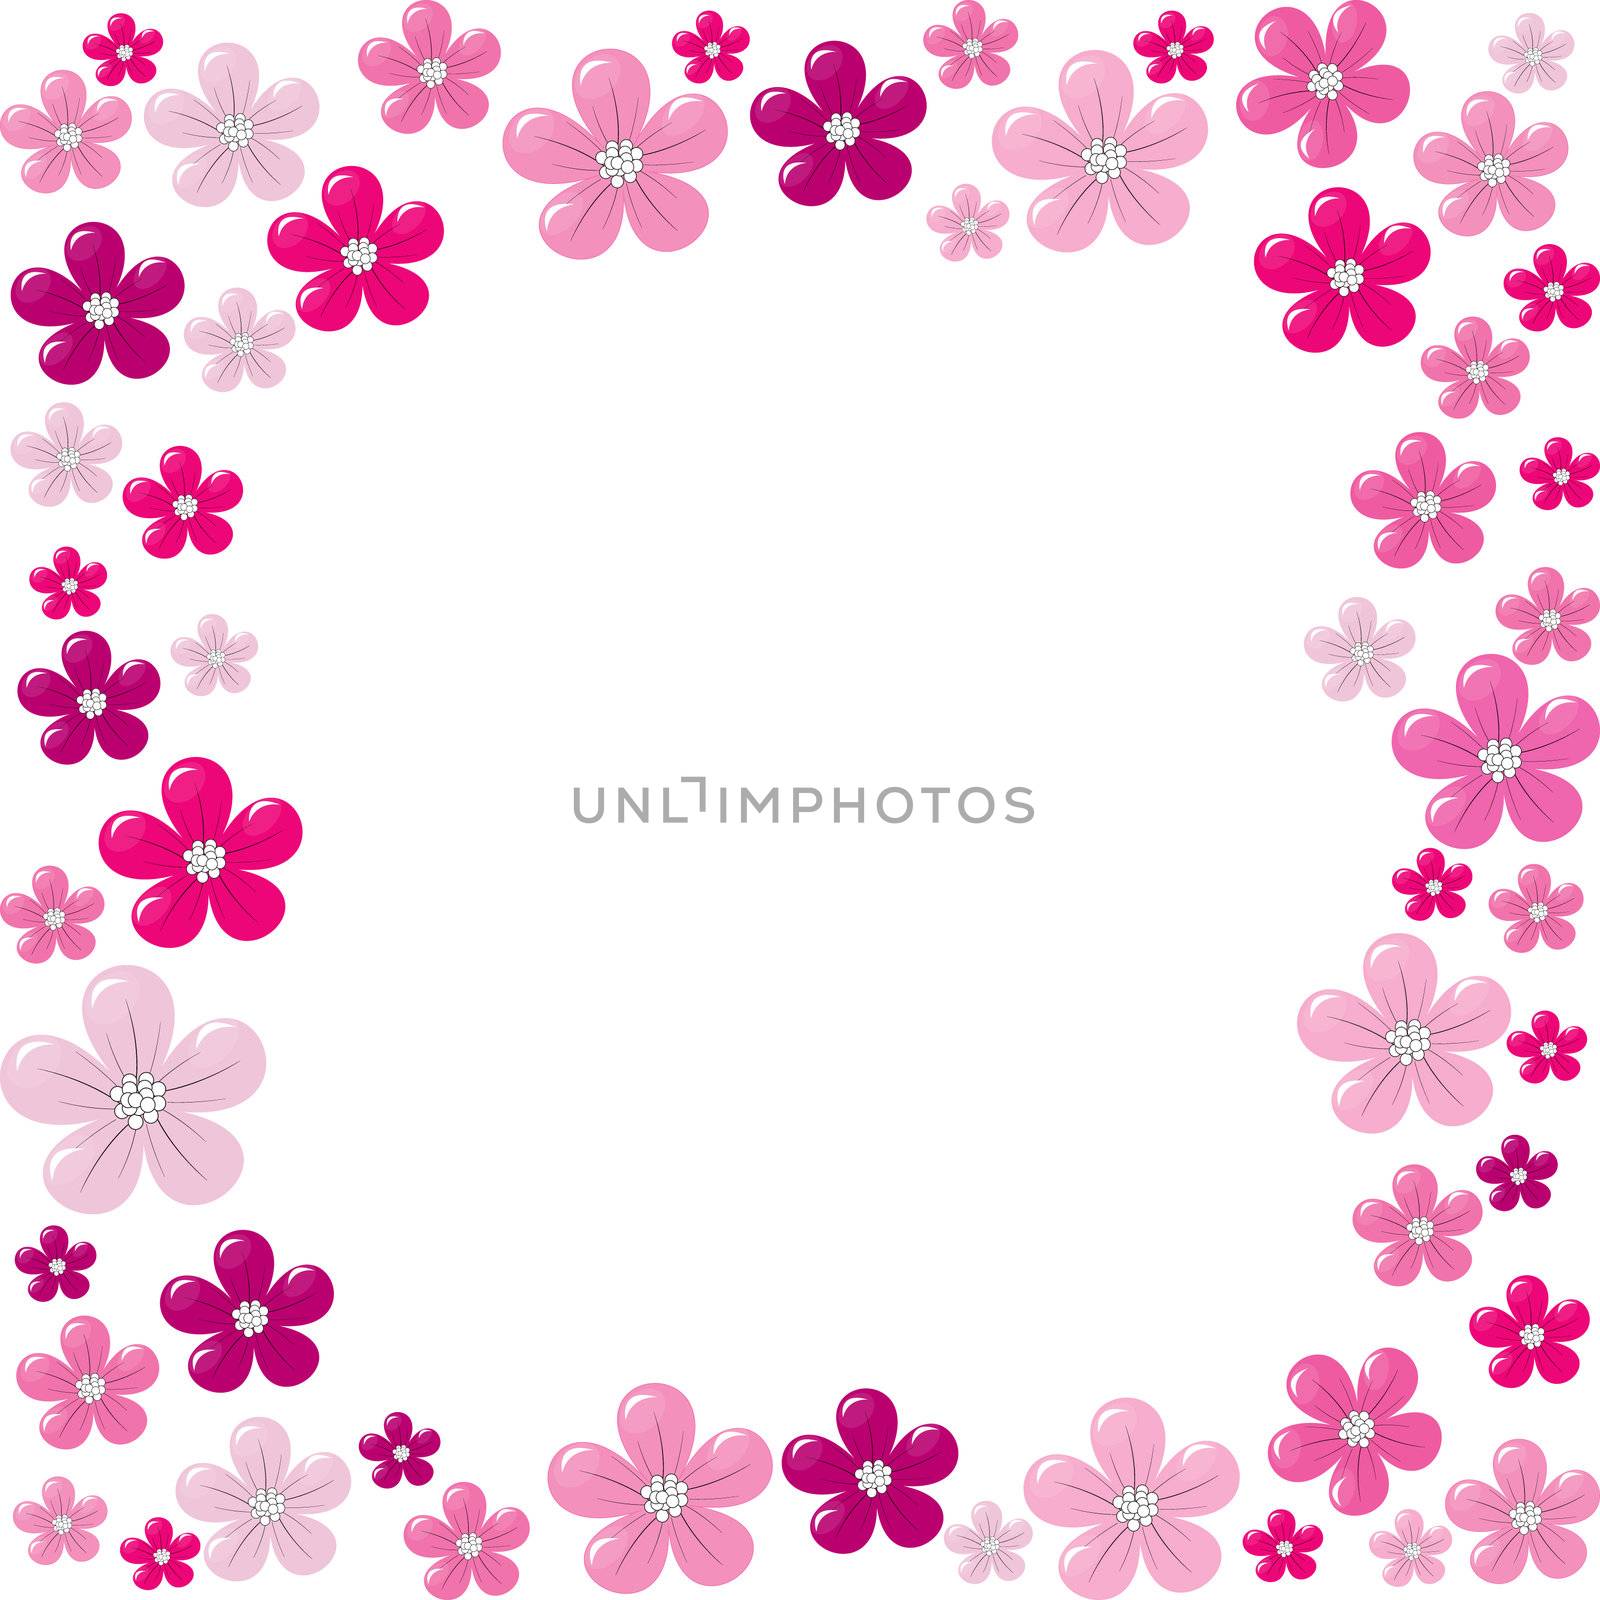 Pink floral frame by hibrida13